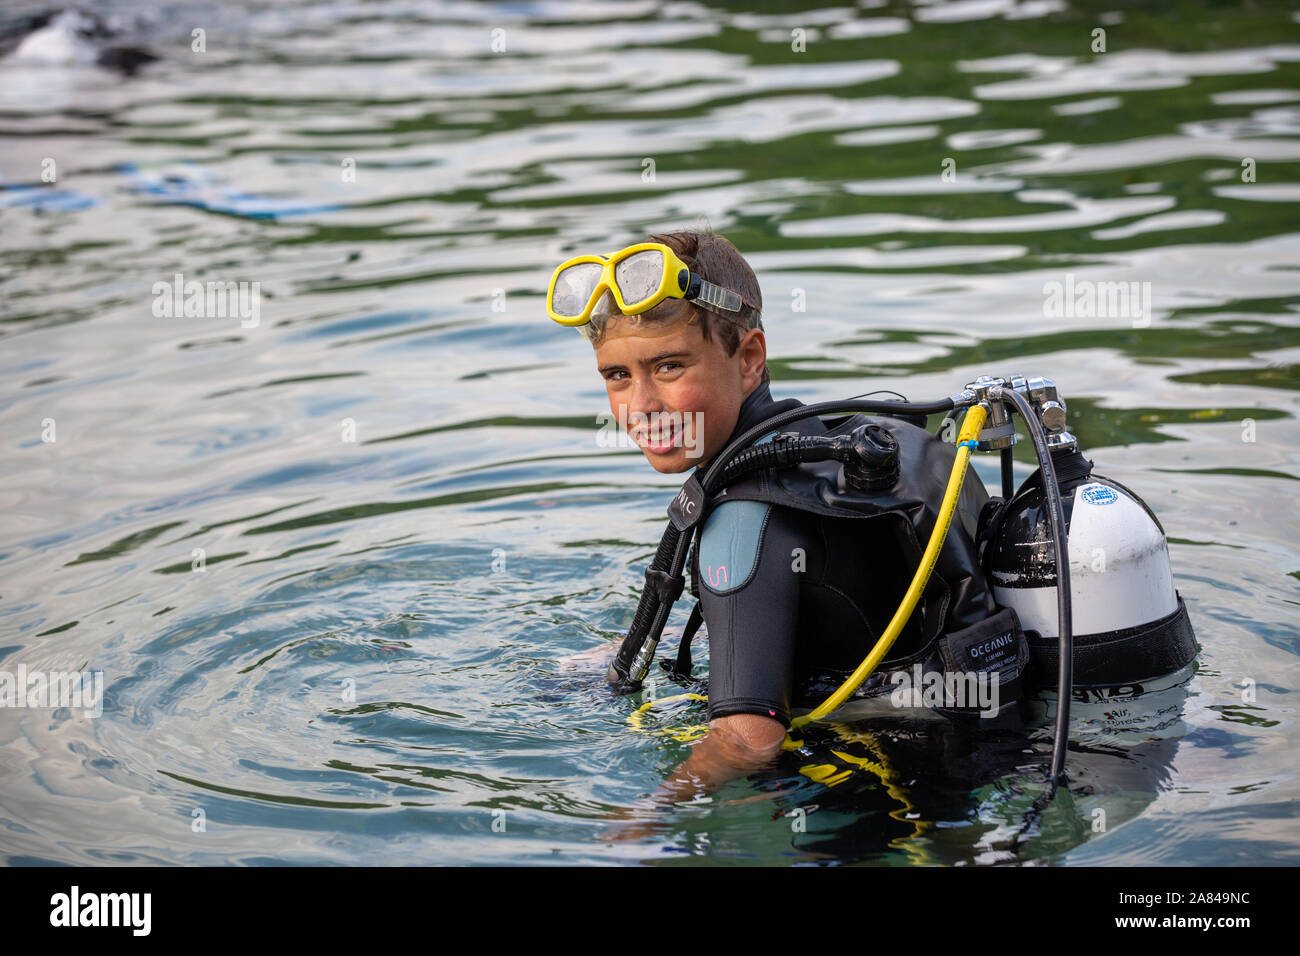 Un giovane ragazzo che indossa la piena scuba diving outfit nell'acqua. Foto Stock